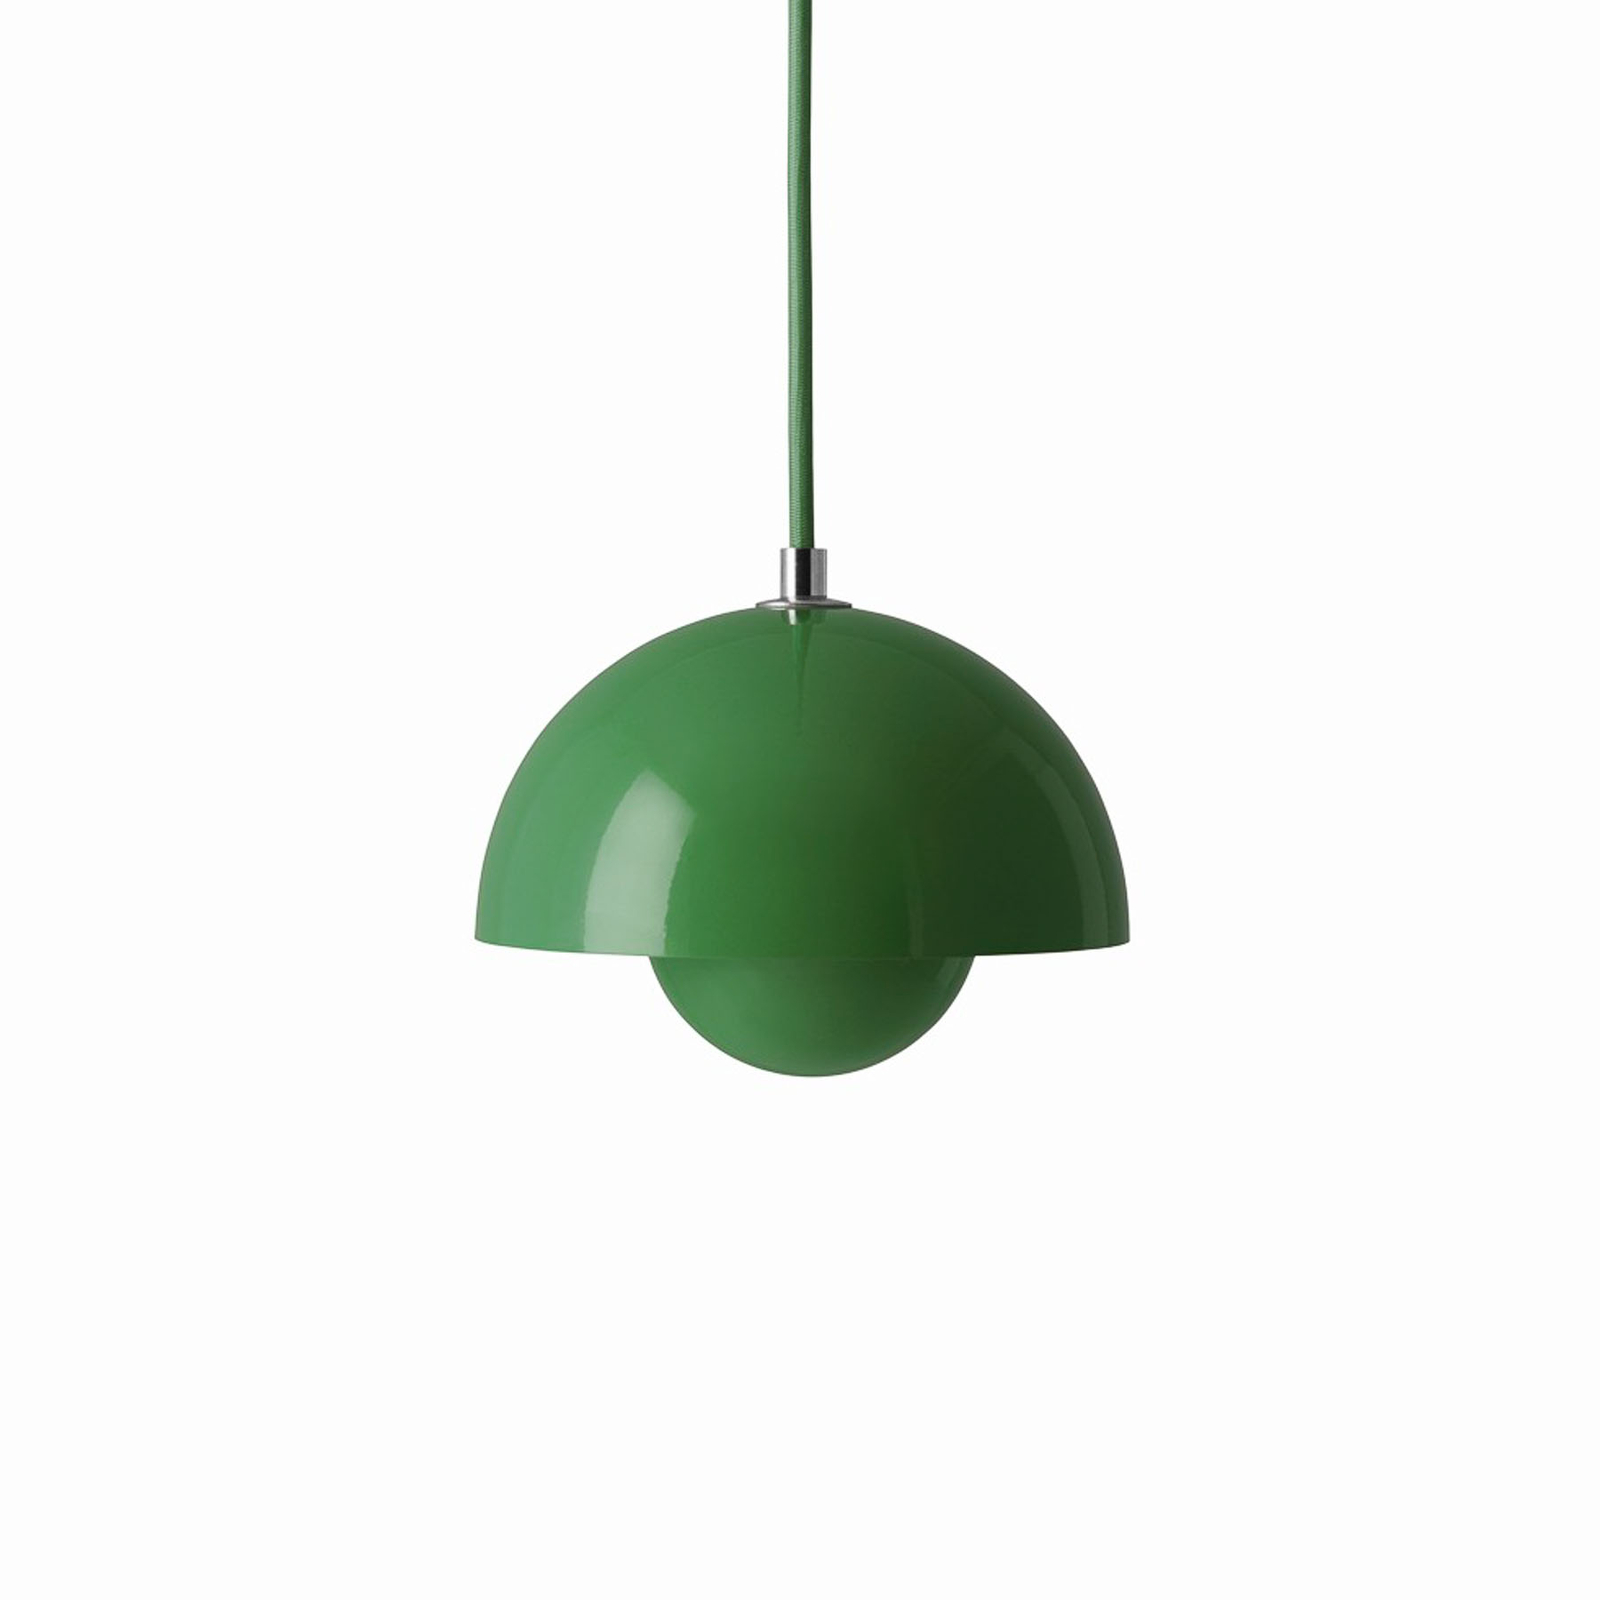 &Tradiční závěsné světlo Flowerpot VP10, Ø 16 cm, signální zelená